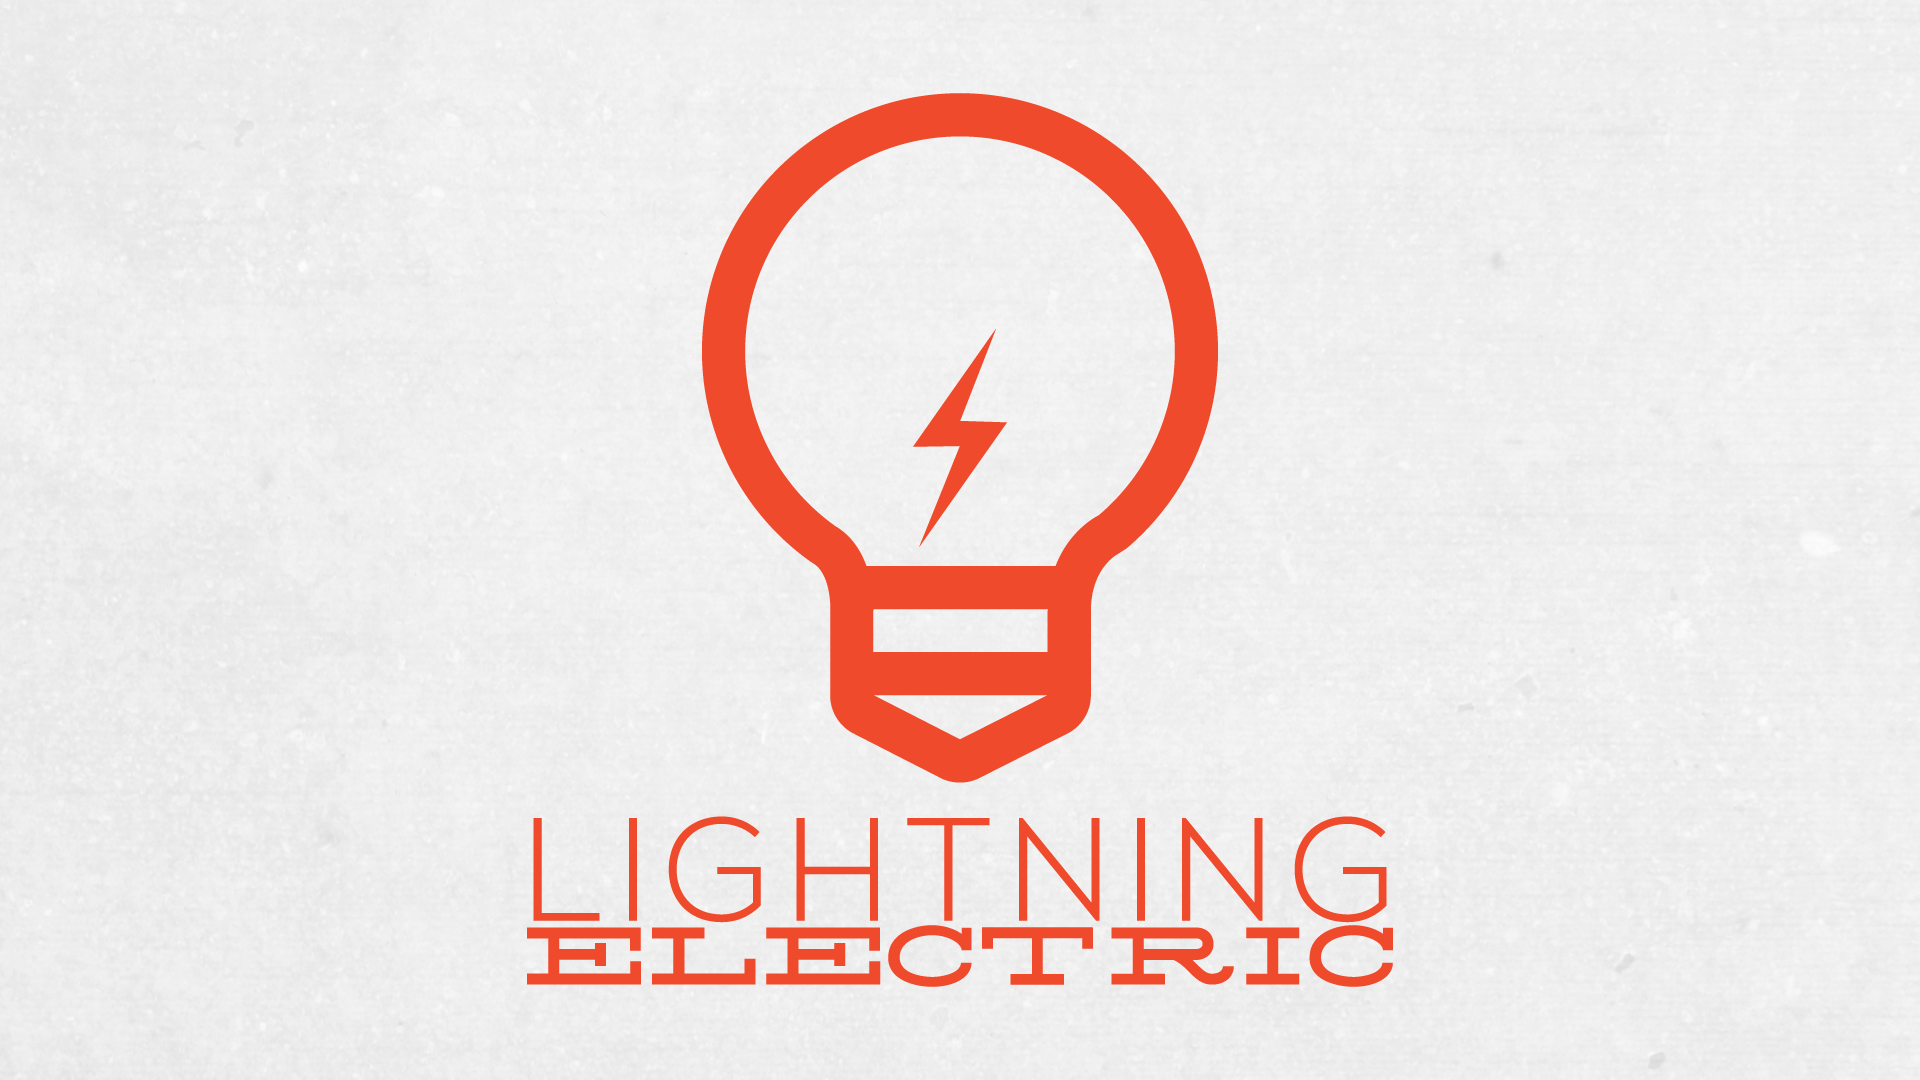 Human electric company. Логотип электрика. Логотип компании электрика. Брендинг электрика. Electrical goods Company logo.